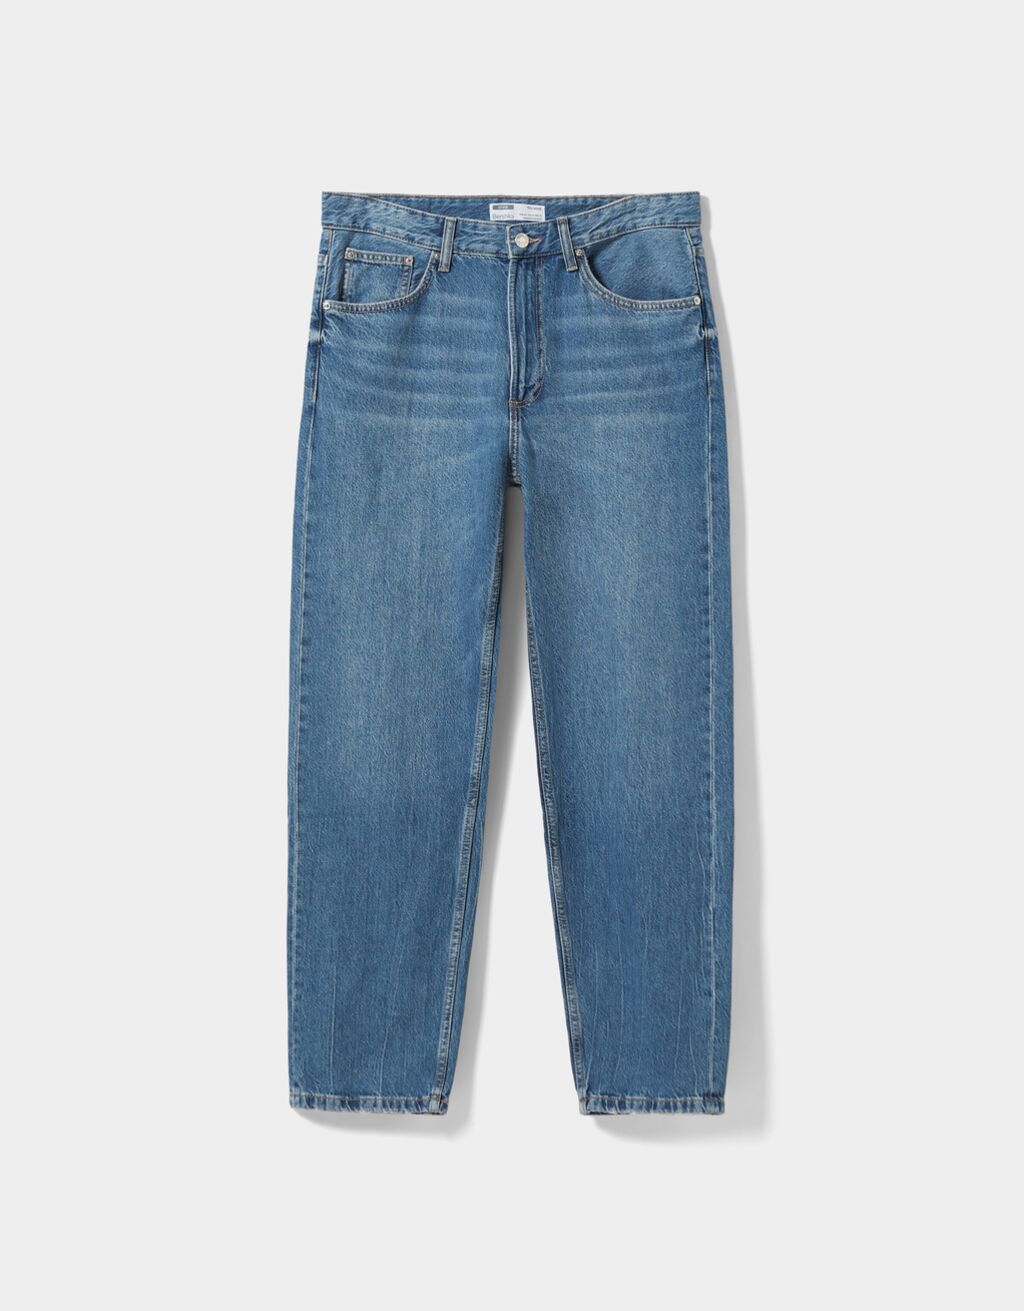 Široké džínsy v štýle 90. rokov